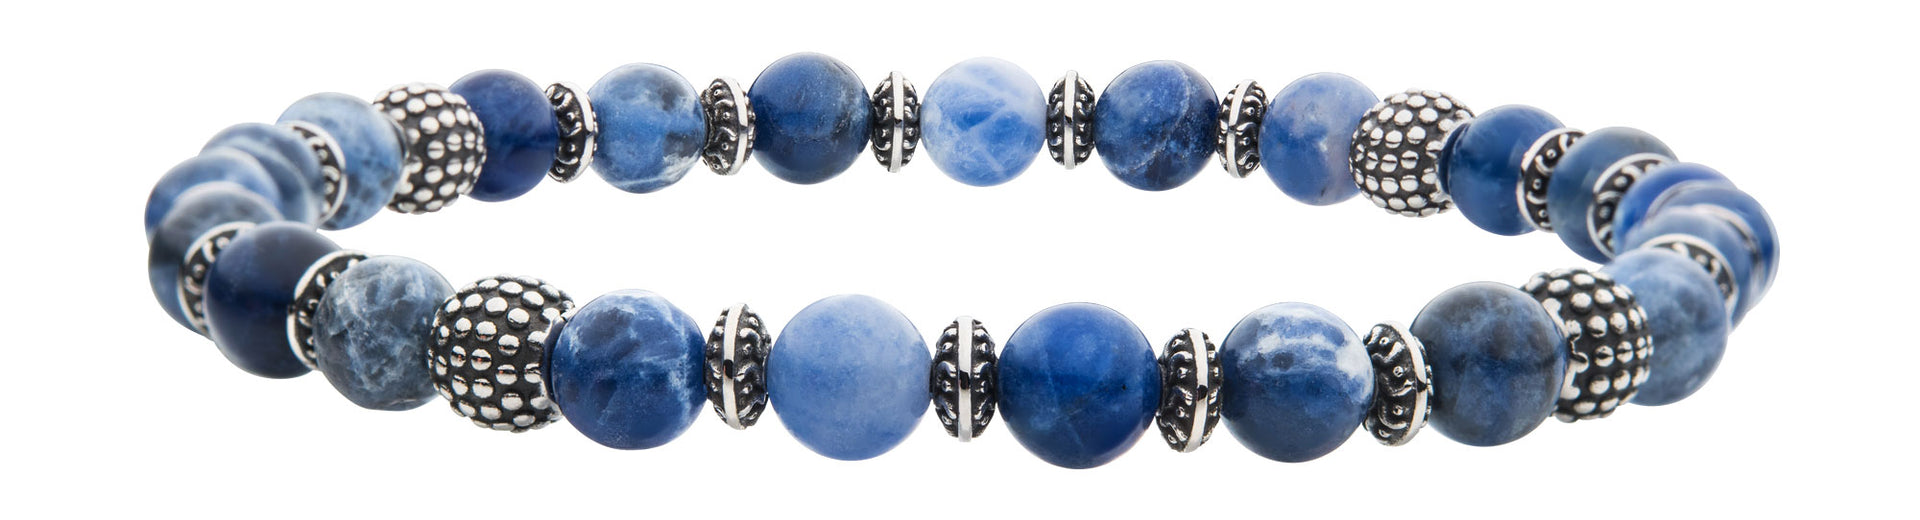 Stainless Steel 19cm Blue Sodalite Bead Bracelet